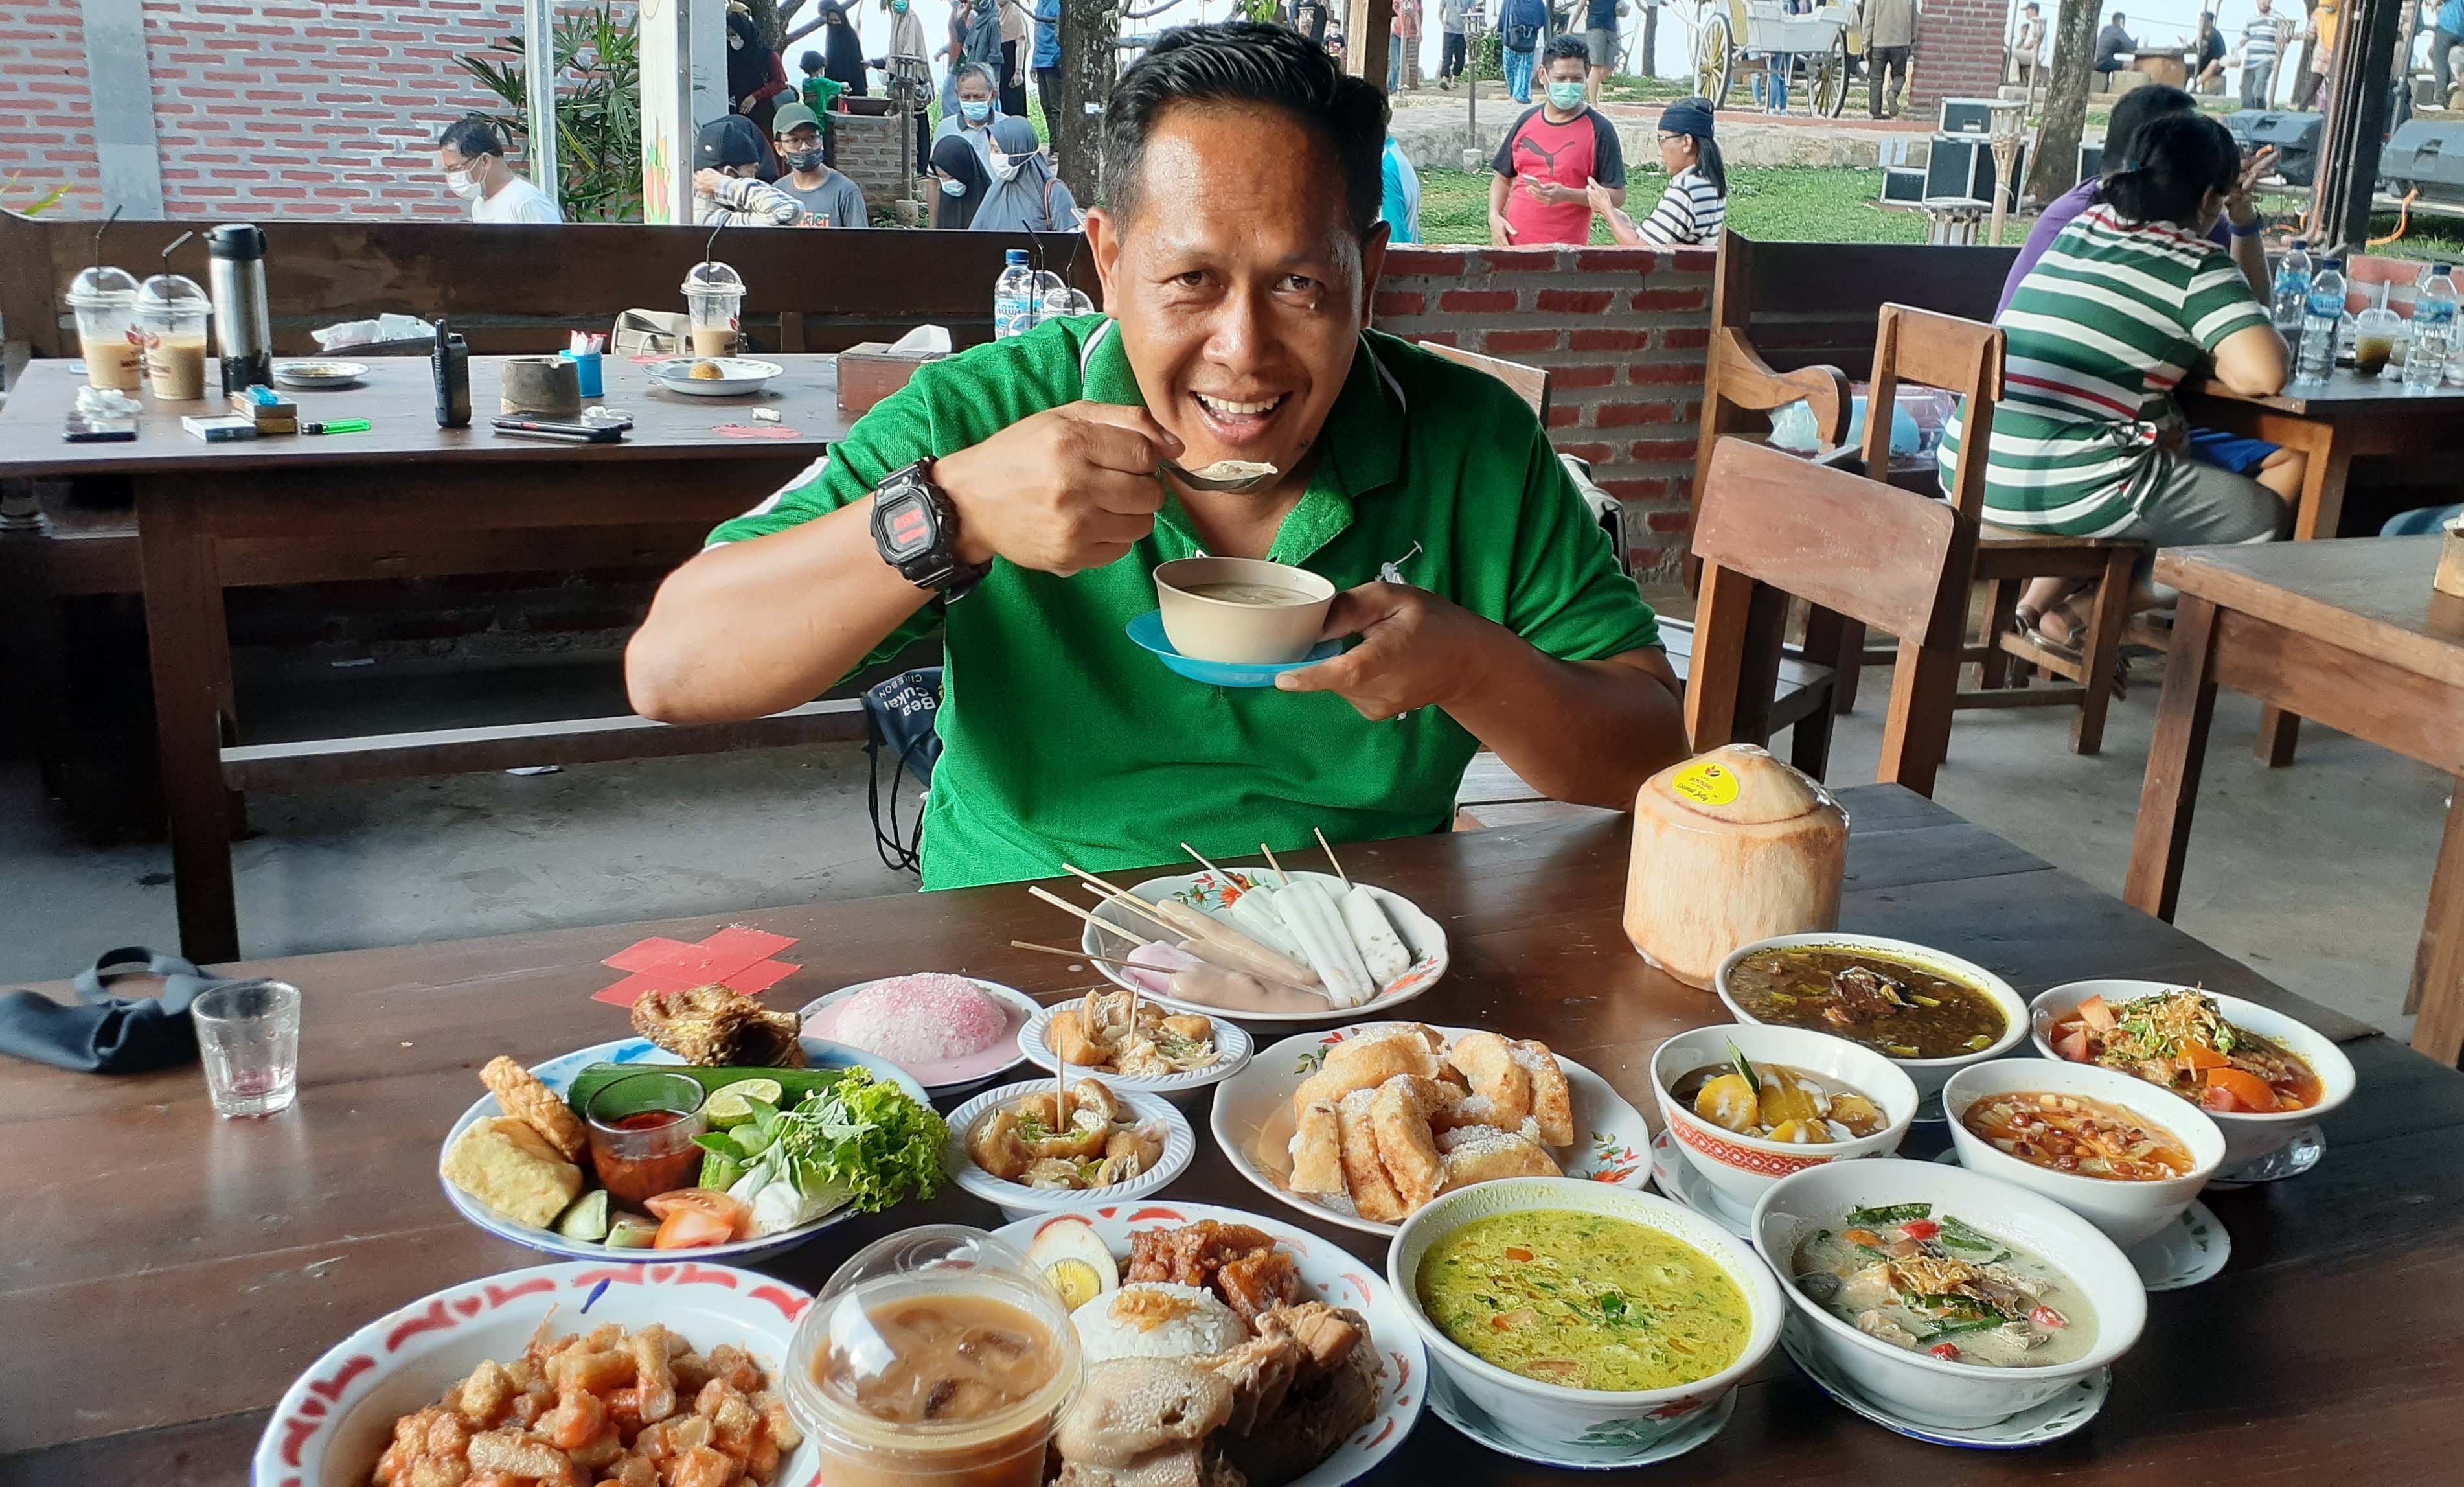 DIREKTUR Utama Kopi Montong, Ahmad Supardi saat mencoba menu buka puasa untuk program Pasar Montong Ramadan (Pamor), Sabtu (10/4/2021).* Iwan/KC